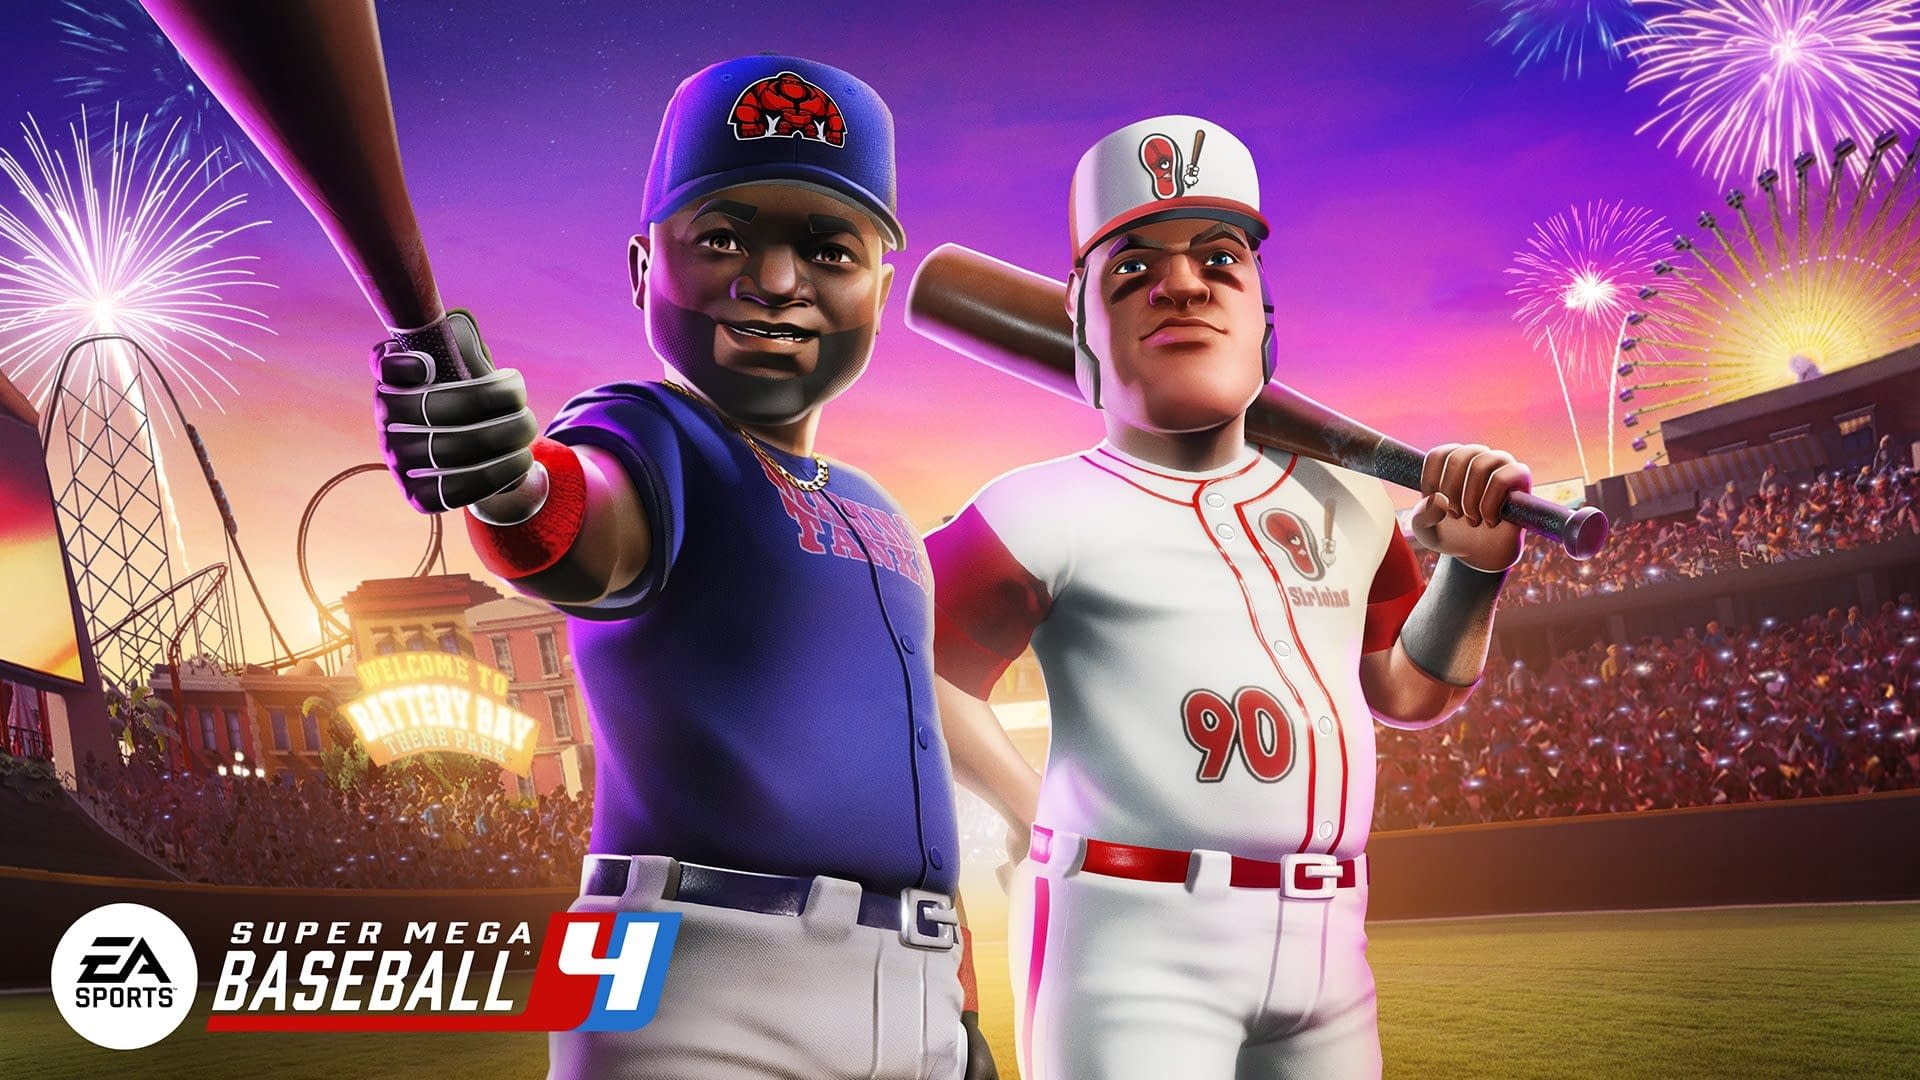 EA announced Super Mega Baseball 4